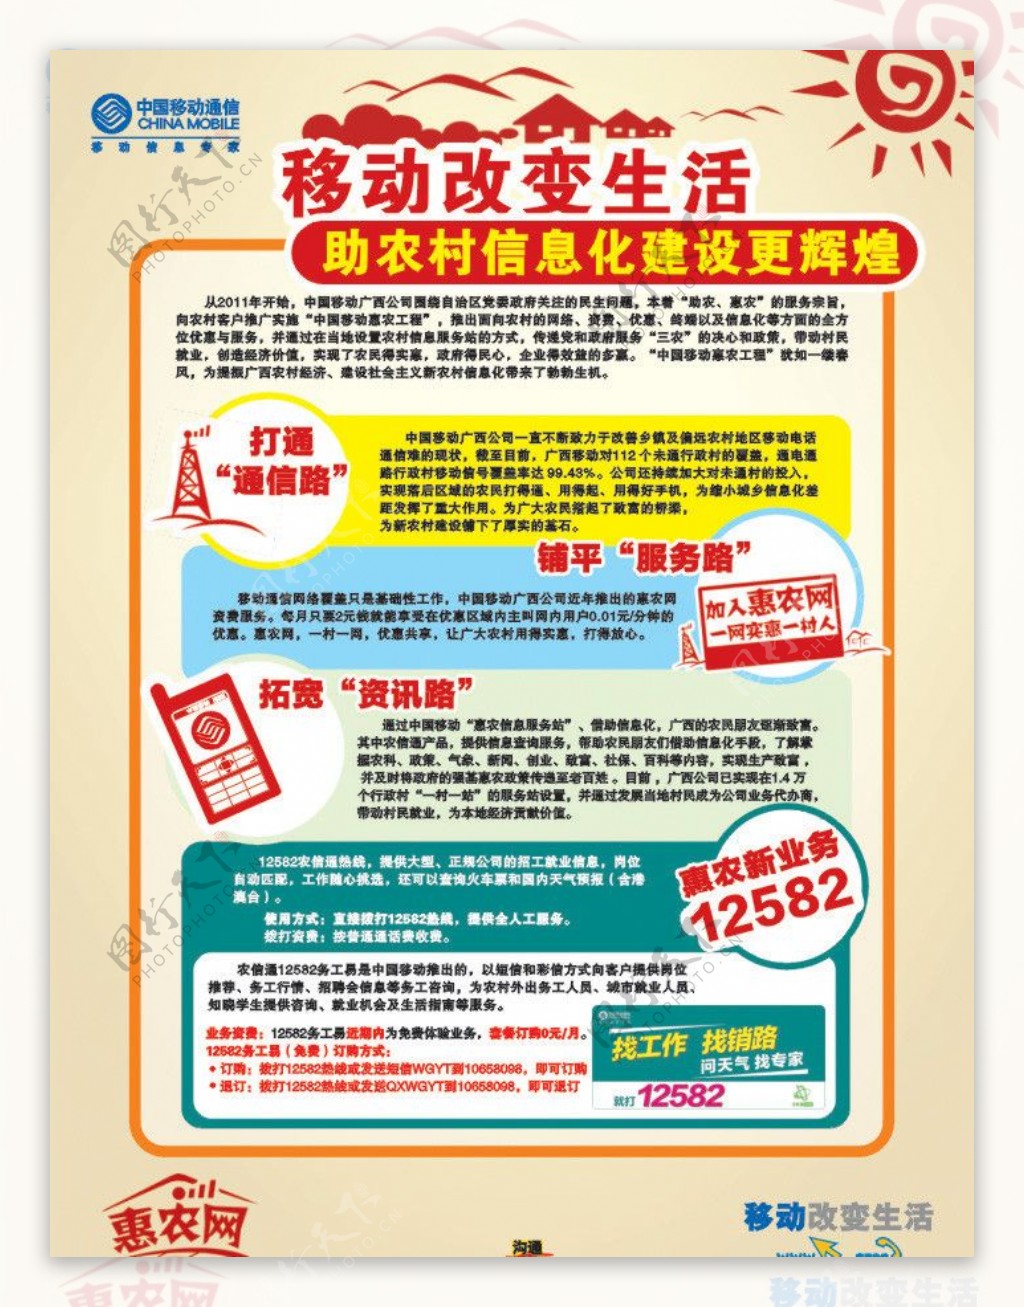 中国移动惠农网海报